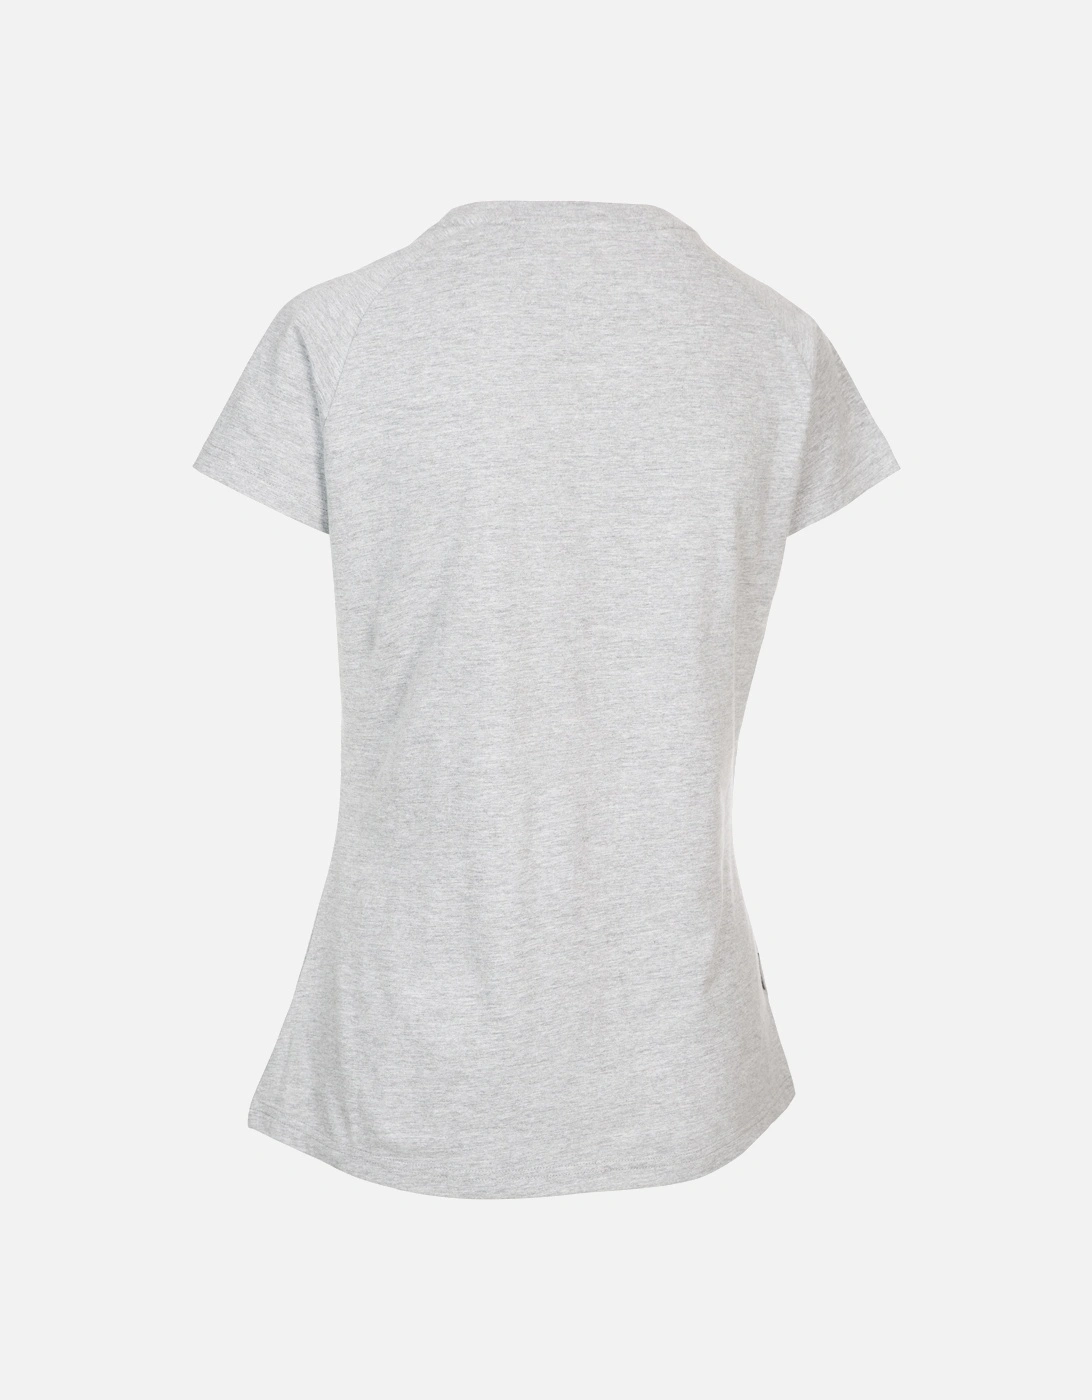 Womens/Ladies Dunebug T-Shirt